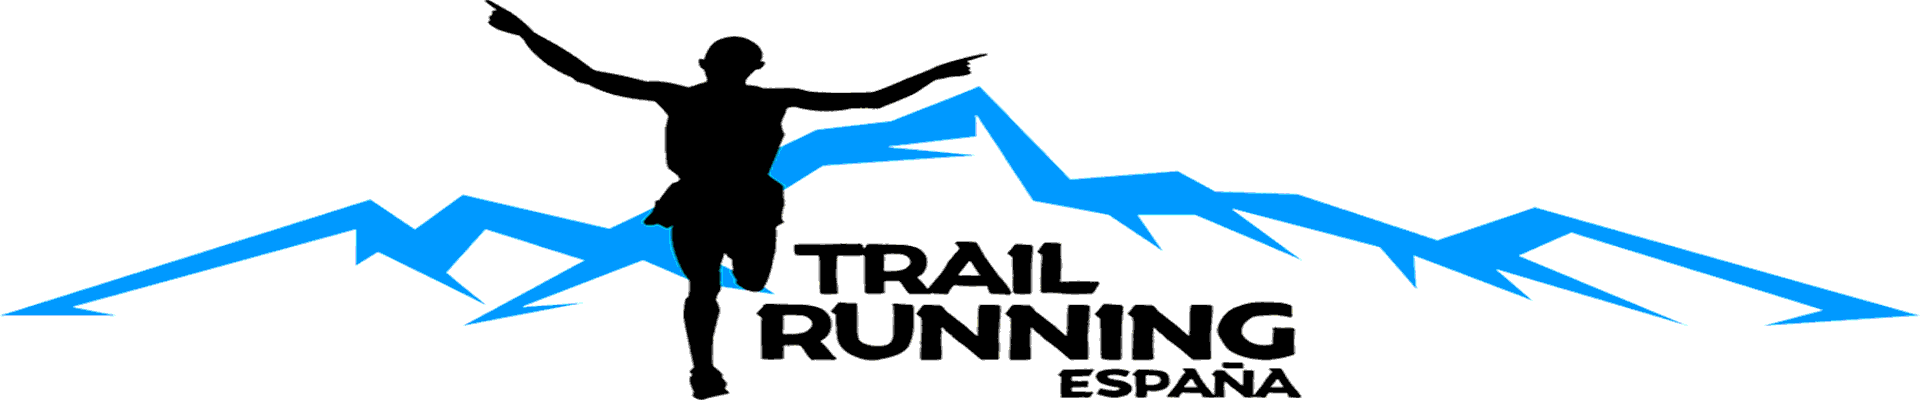 Trail Running España